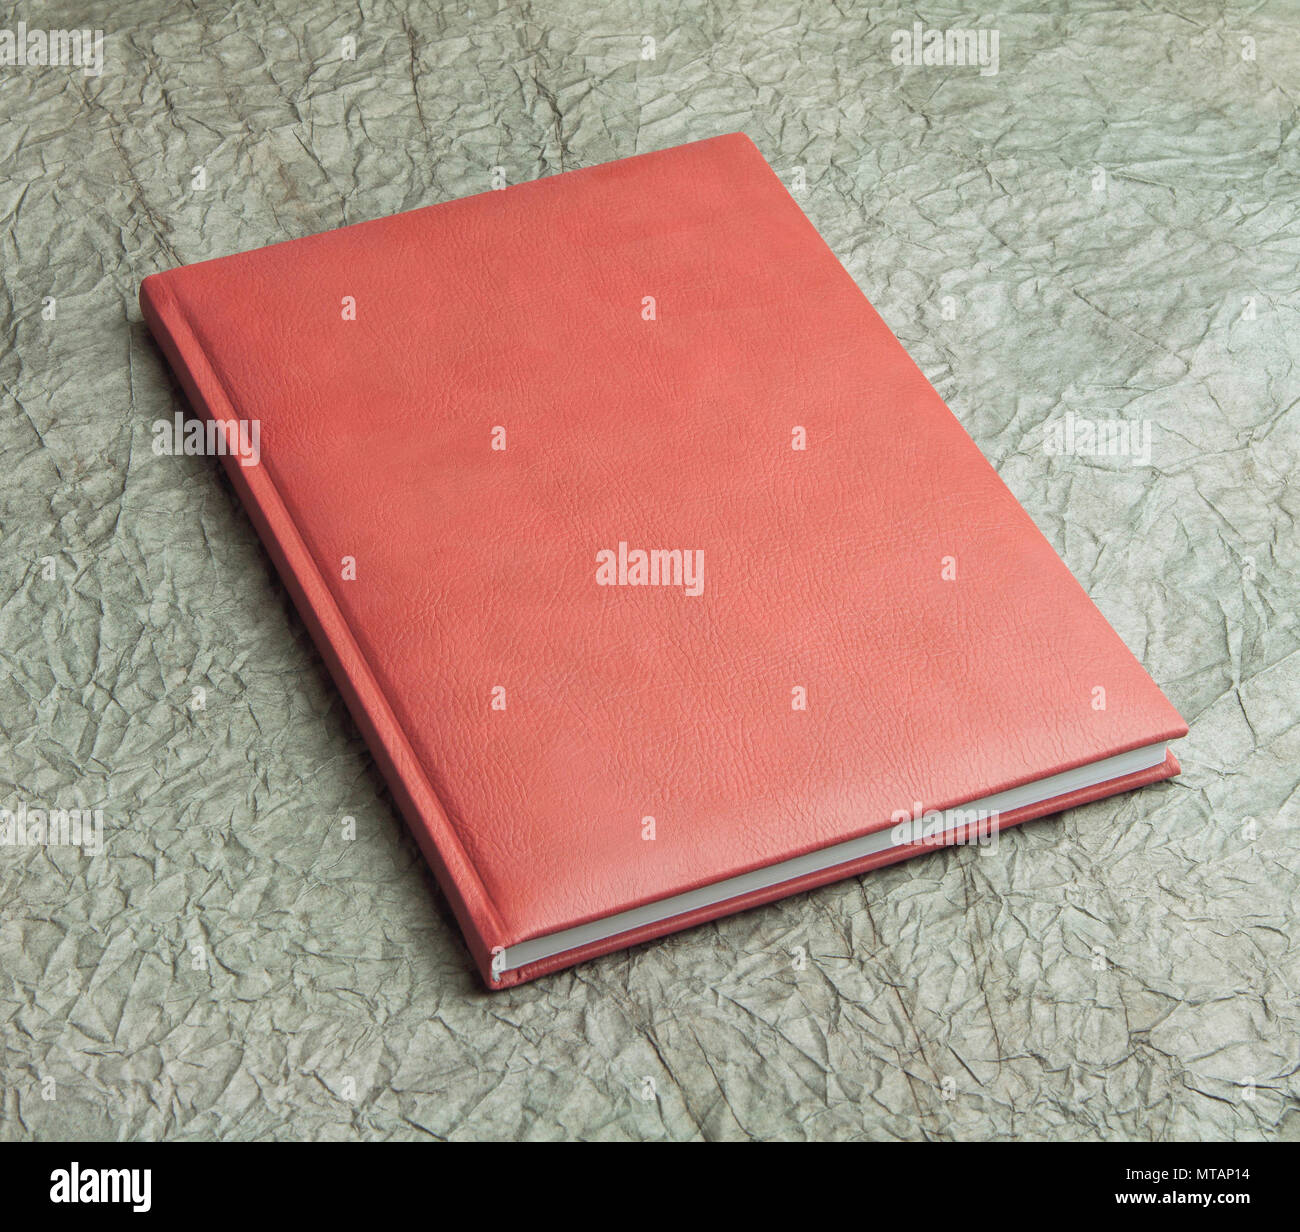 Rote Bücher in Leder auf einem design Papier, Design, Corporate Identity  vorlagen, Firma Stil Stockfotografie - Alamy